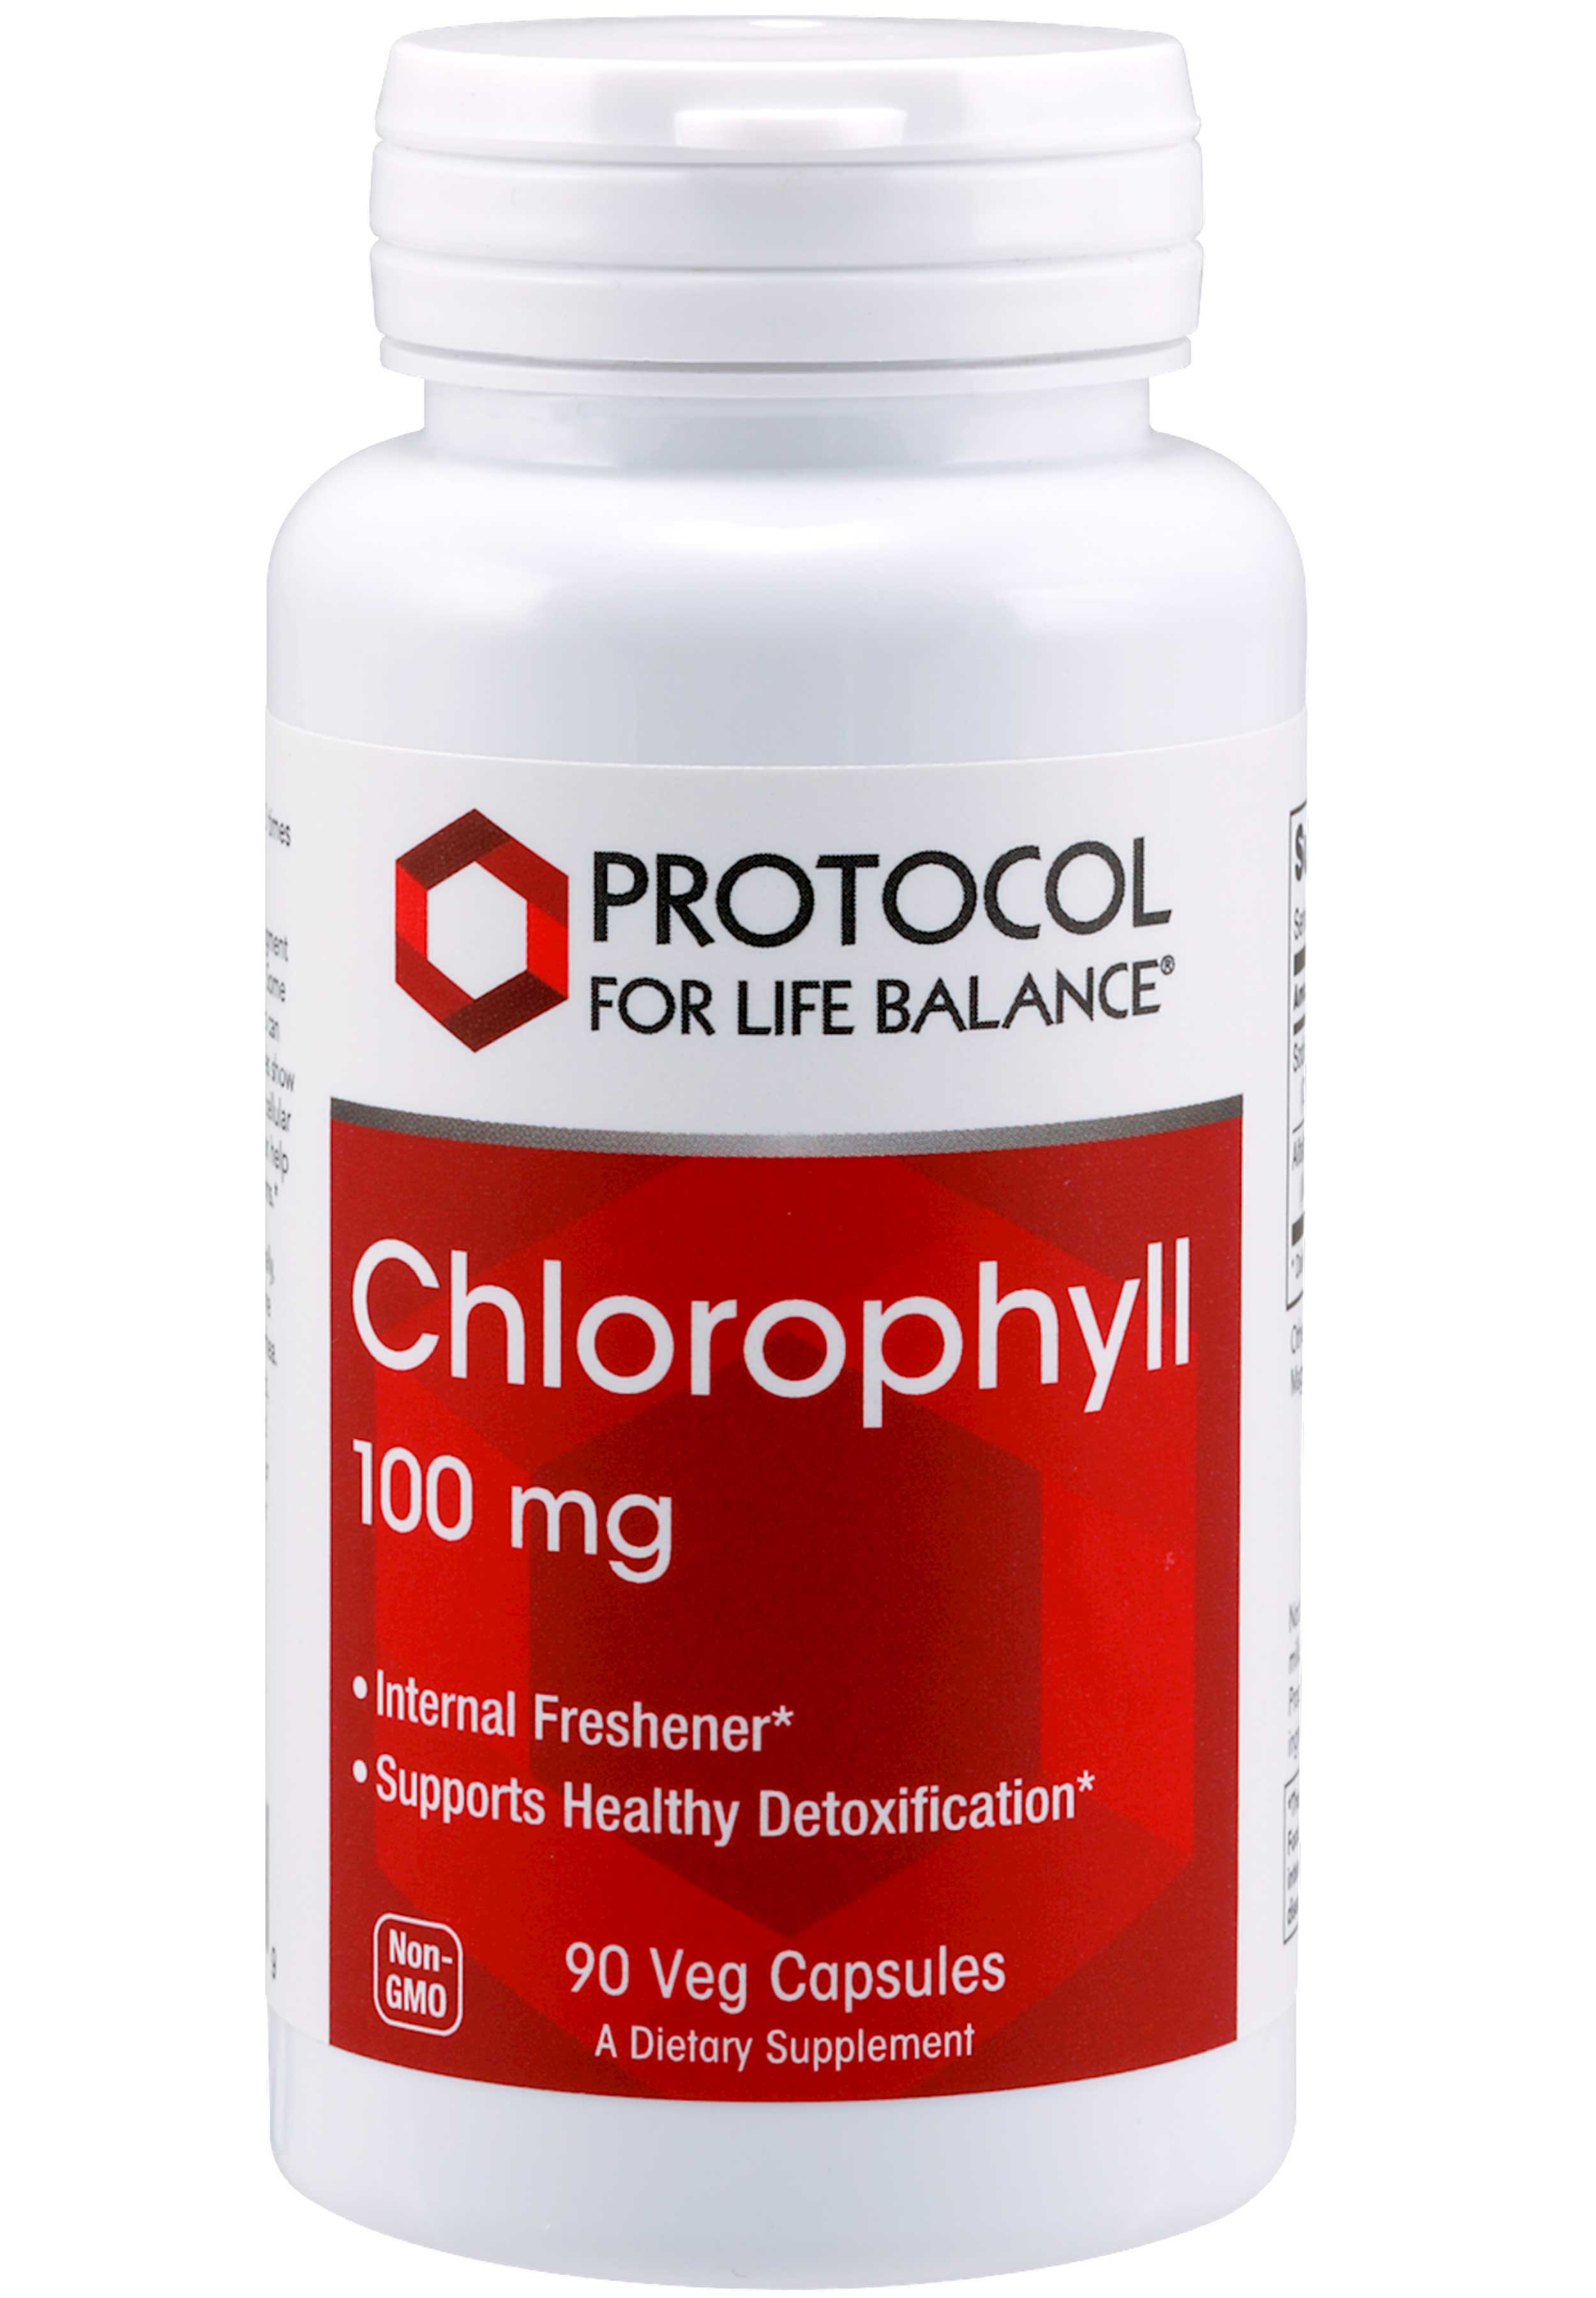 Protocol for Life Balance Chlorophyll 100 mg